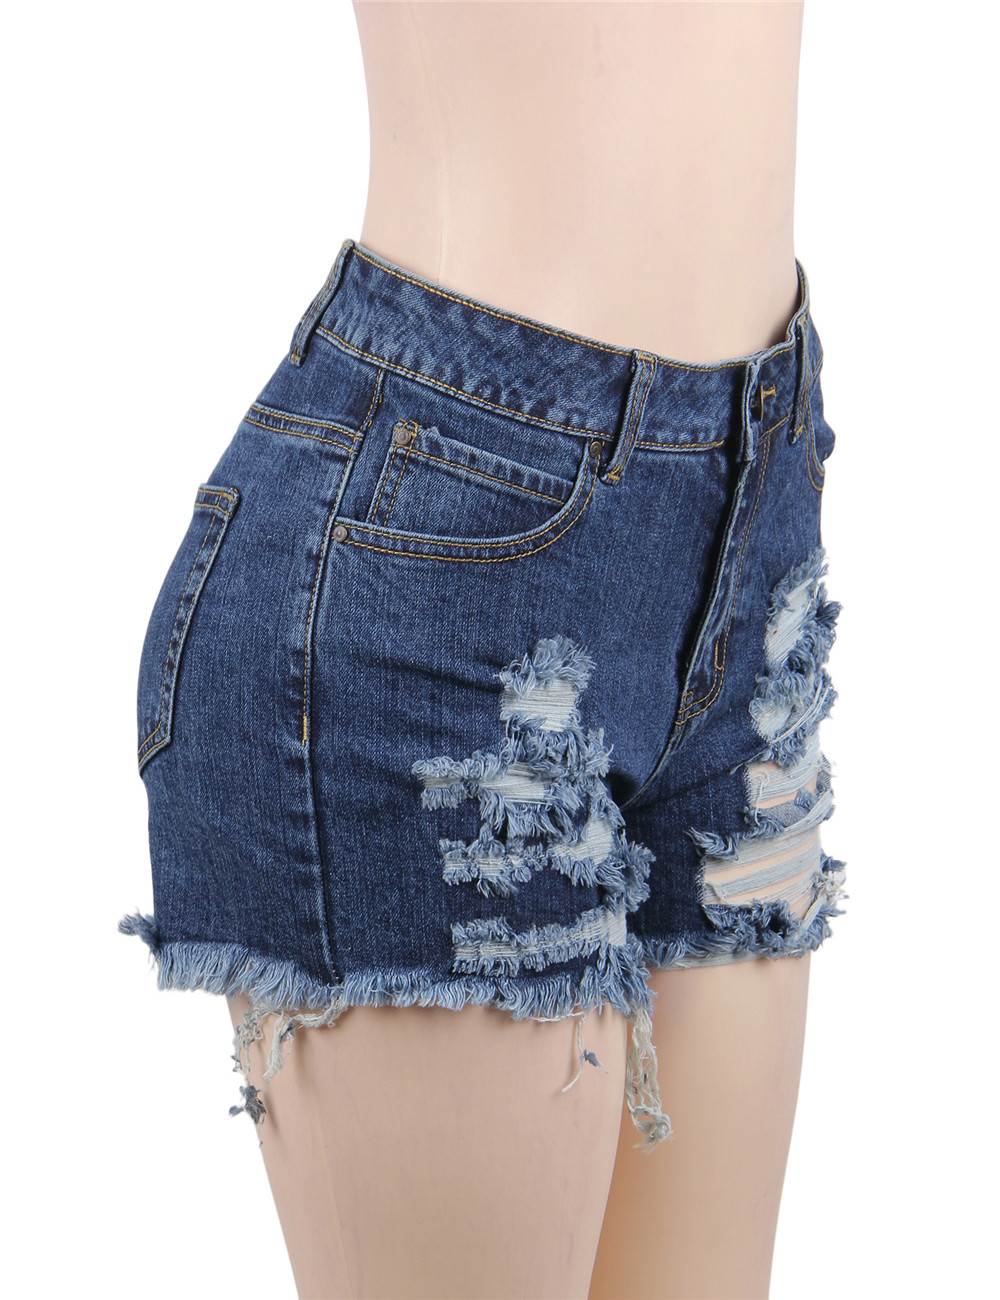 Broken Holes Shorts Zipper Sexy Summer Jeans Shorts | Ohyeah